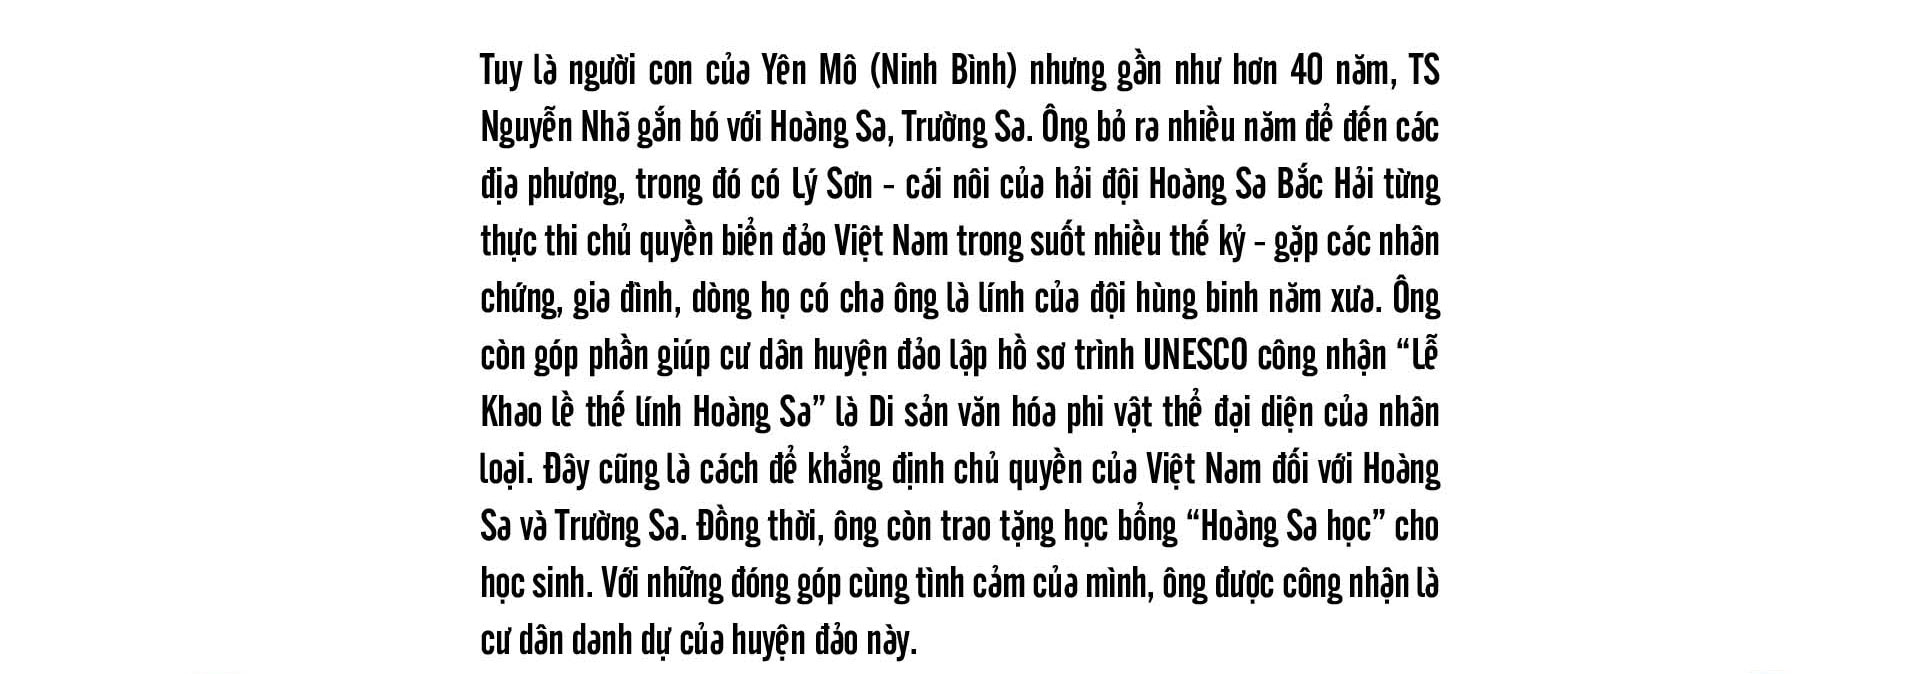 Tiến sĩ sử học Nguyễn Nhã: Muốn bảo vệ chủ quyền, không gì hay hơn là trở thành cường quốc biển  - Ảnh 8.